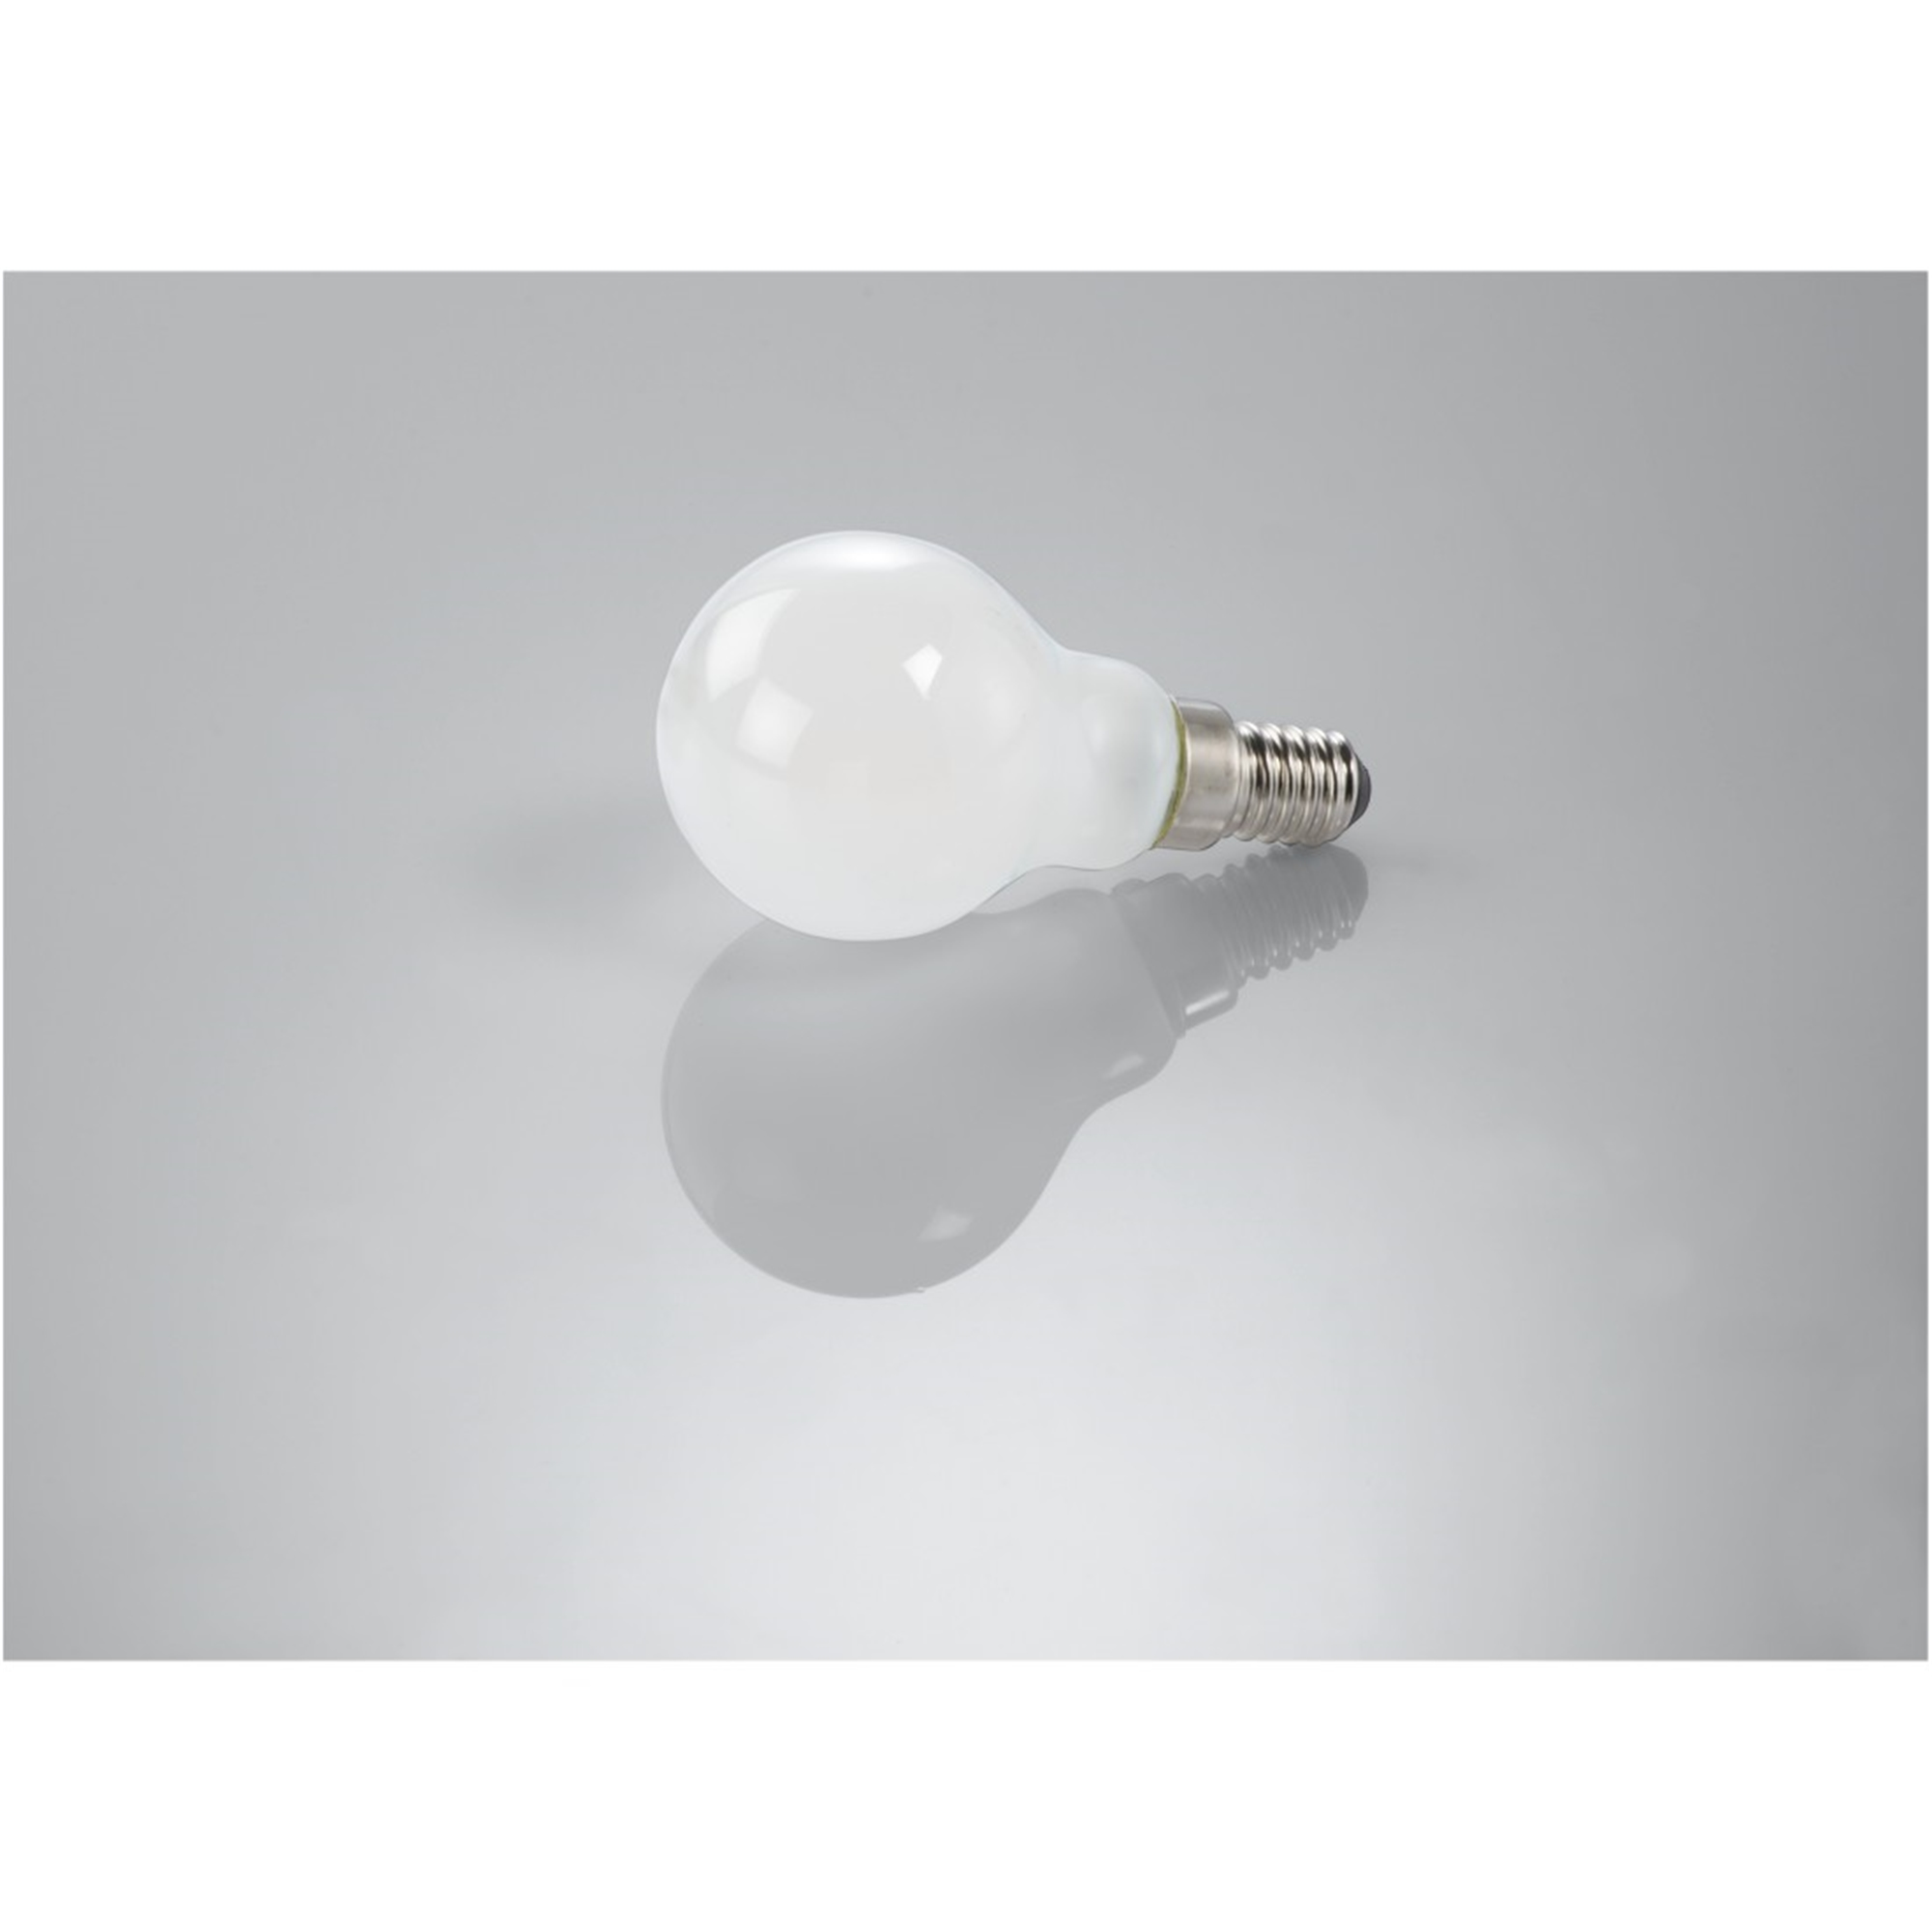 XAVAX E14, 470lm ersetzt 40W Warmweiß LED-Lampe E14